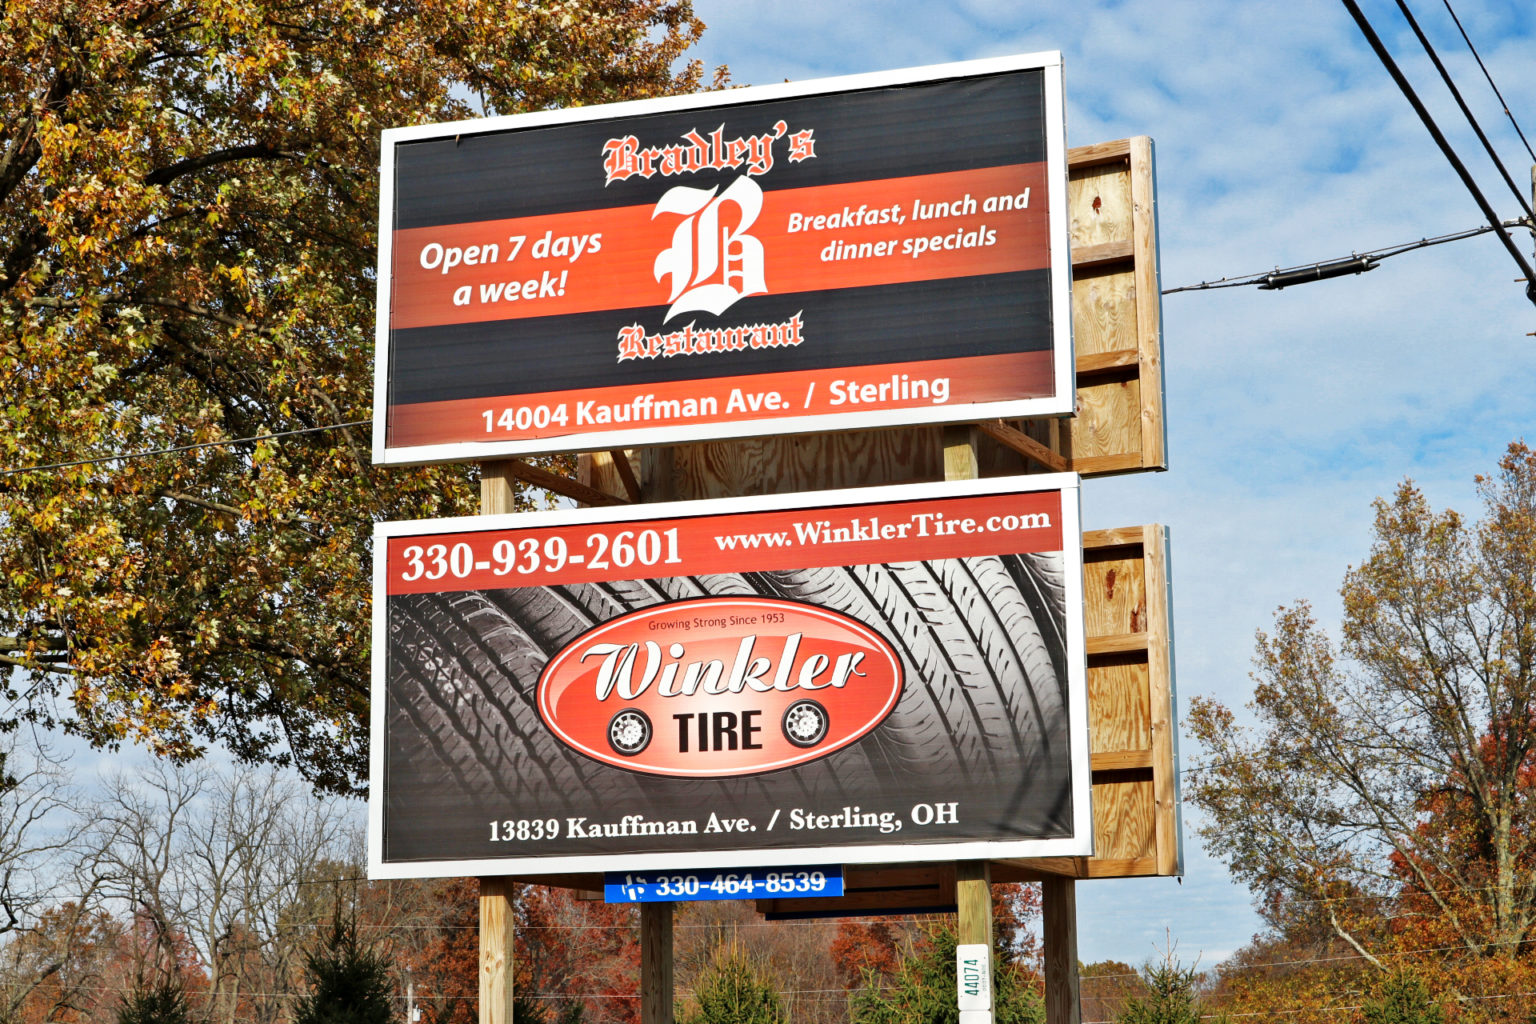 Contact Ohio Outdoor Billboard Advertising